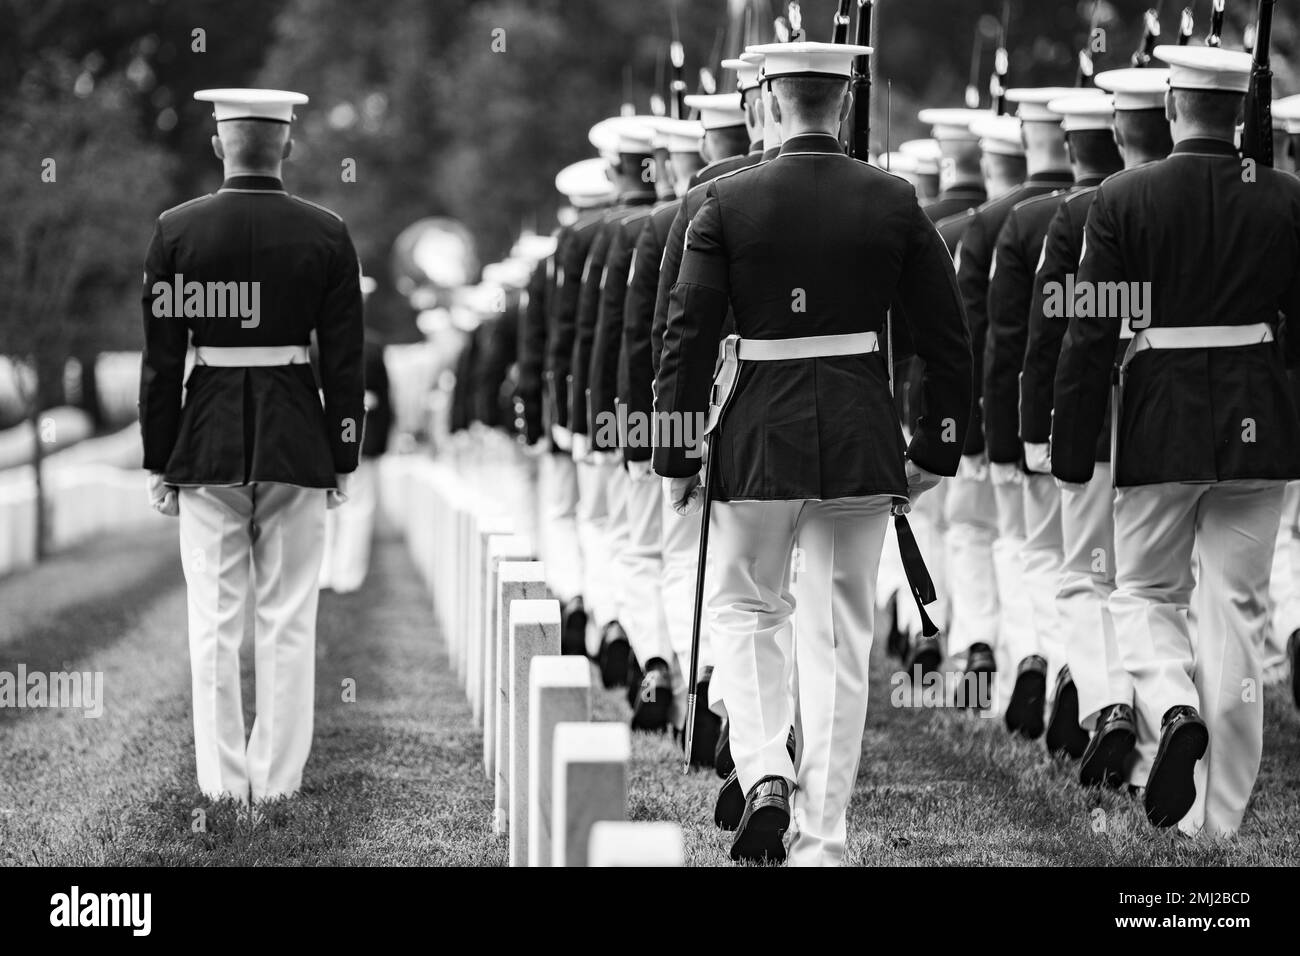 Infantes de marina de la Banda de Marines “El Propio Presidente”, infantes de marina de los Cuarteles de Marines, Washington, D.C. (8th y I), y los 3D Estados Unidos El Regimiento de Infantería (la Vieja Guardia) Caisson Platoon realiza honores funerarios militares con escolta funeraria para el recipiente de la Medalla de Honor U.S. El Sargento Mayor del Cuerpo de Infantería de Marina John Canley en la Sección 60 del Cementerio Nacional de Arlington, Arlington, Virginia, 25 de agosto de 2022. Canley fue galardonado con la Medalla de Honor en 2018 por sus acciones durante la batalla de la ciudad de Hue, Vietnam en 1968. Como sargento de artillería de la Compañía, Compañía A, 1st Batallón, 1st Infantería de Marina, 1st División de Marines, Canley y el suyo Foto de stock